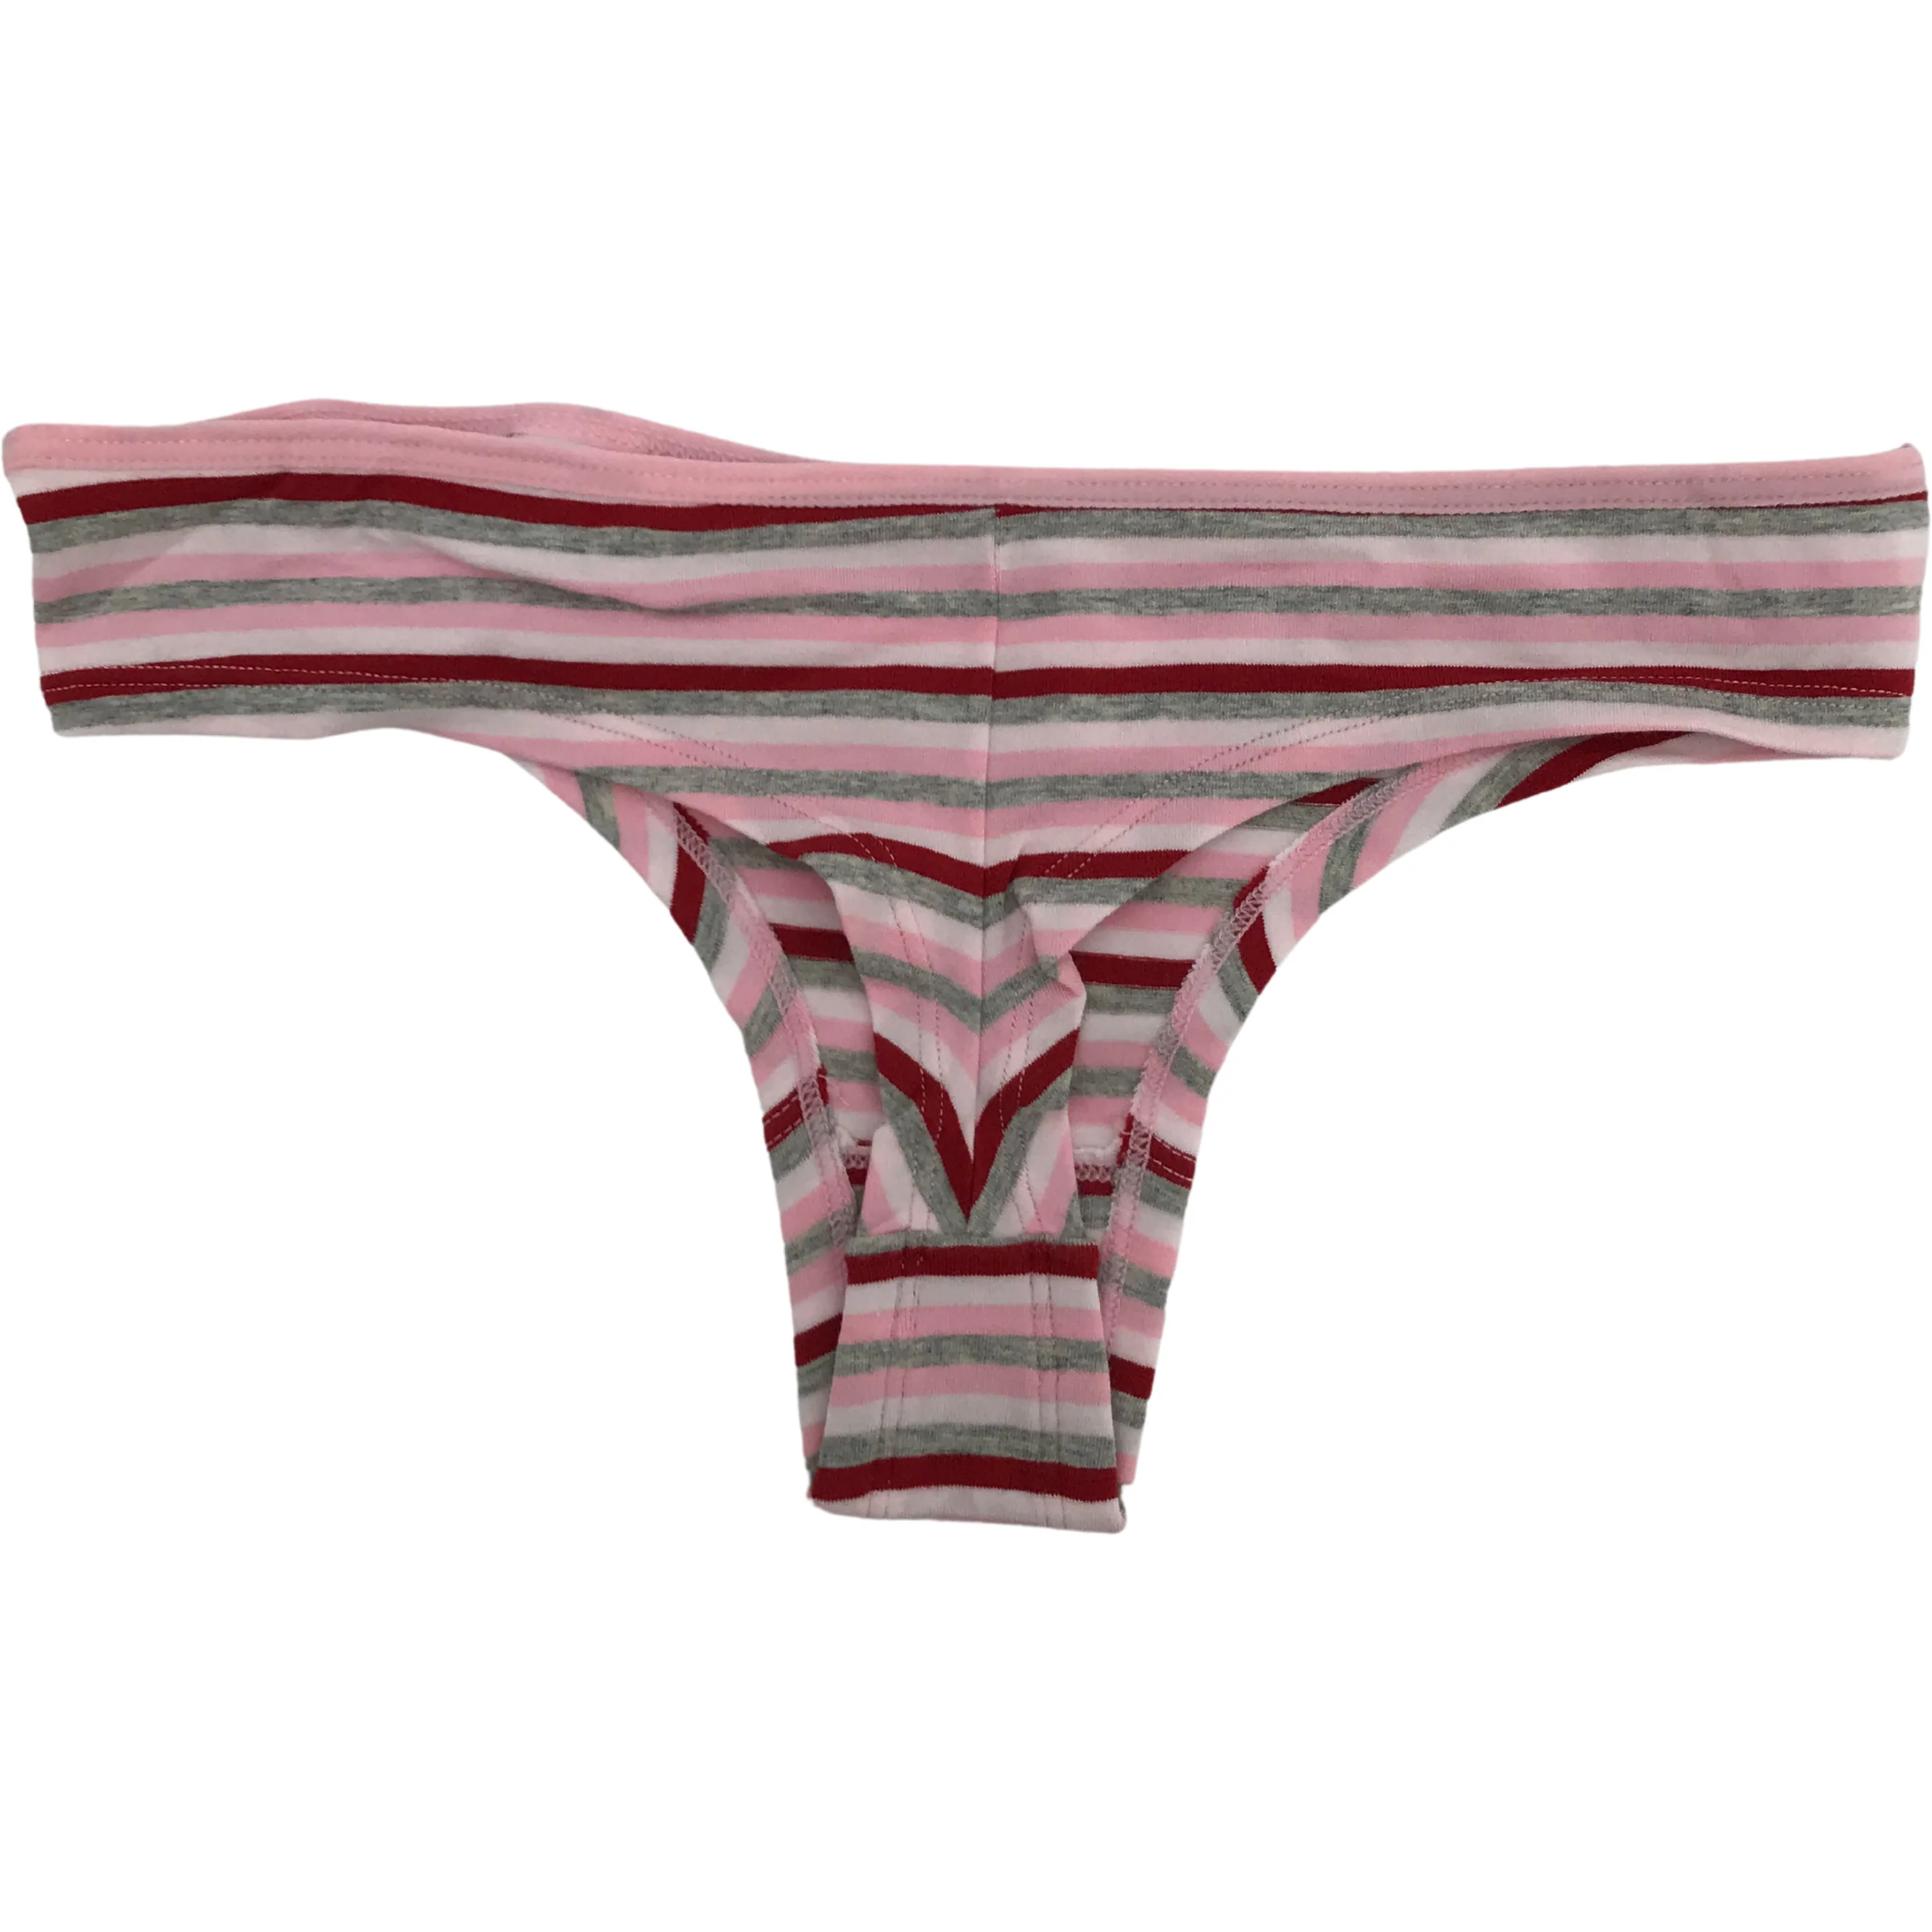 NHL Ottawa Senators Ladies Thong Underwear / Various Sizes / 2 pack / Panties / Red & Pink / Ottawa Senators Logo